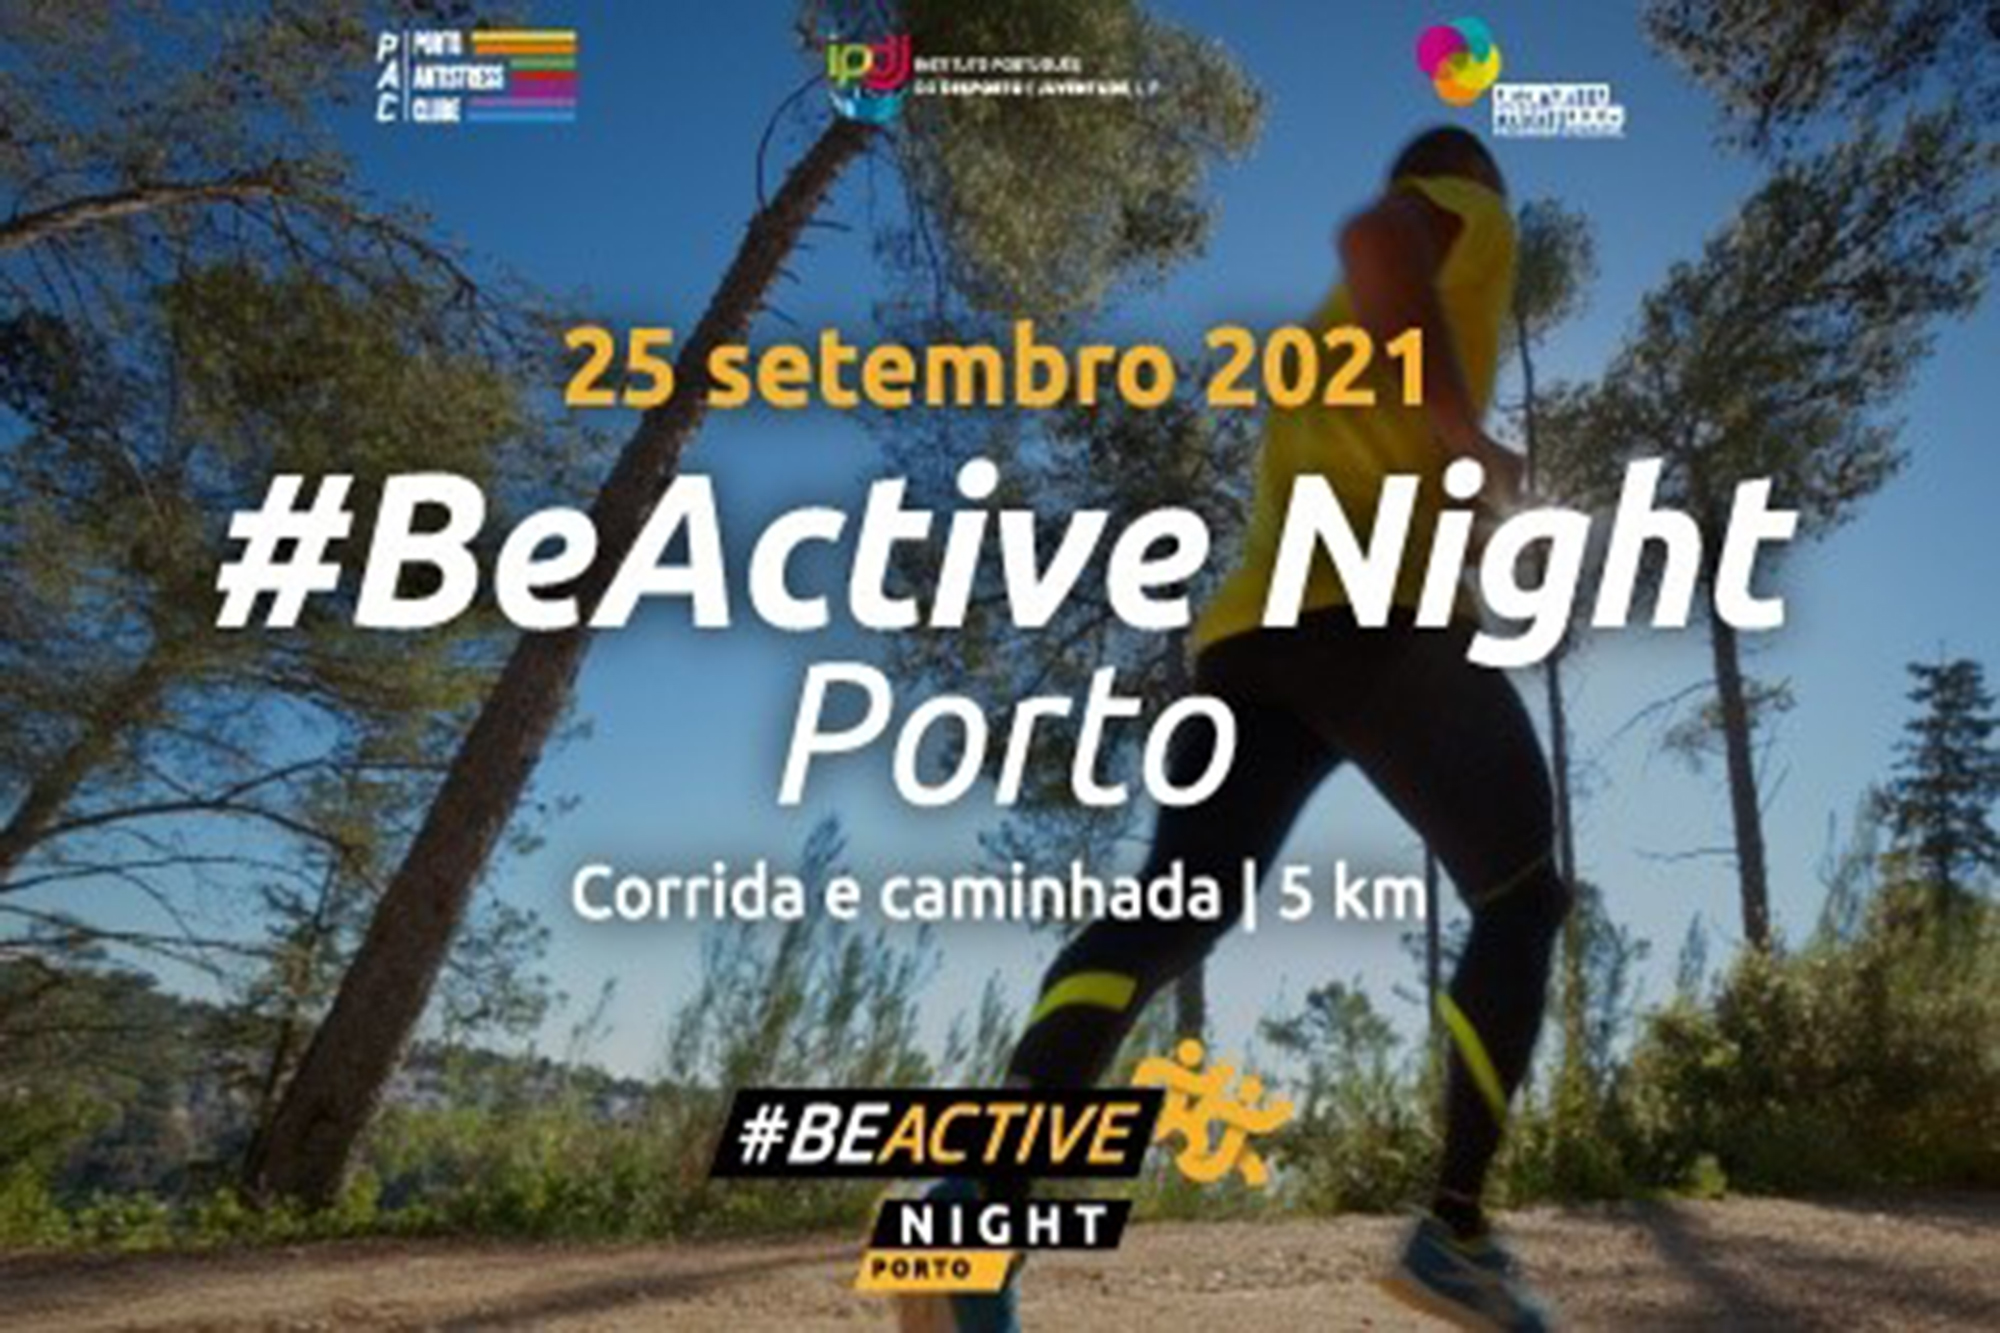 Beactive Night Porto